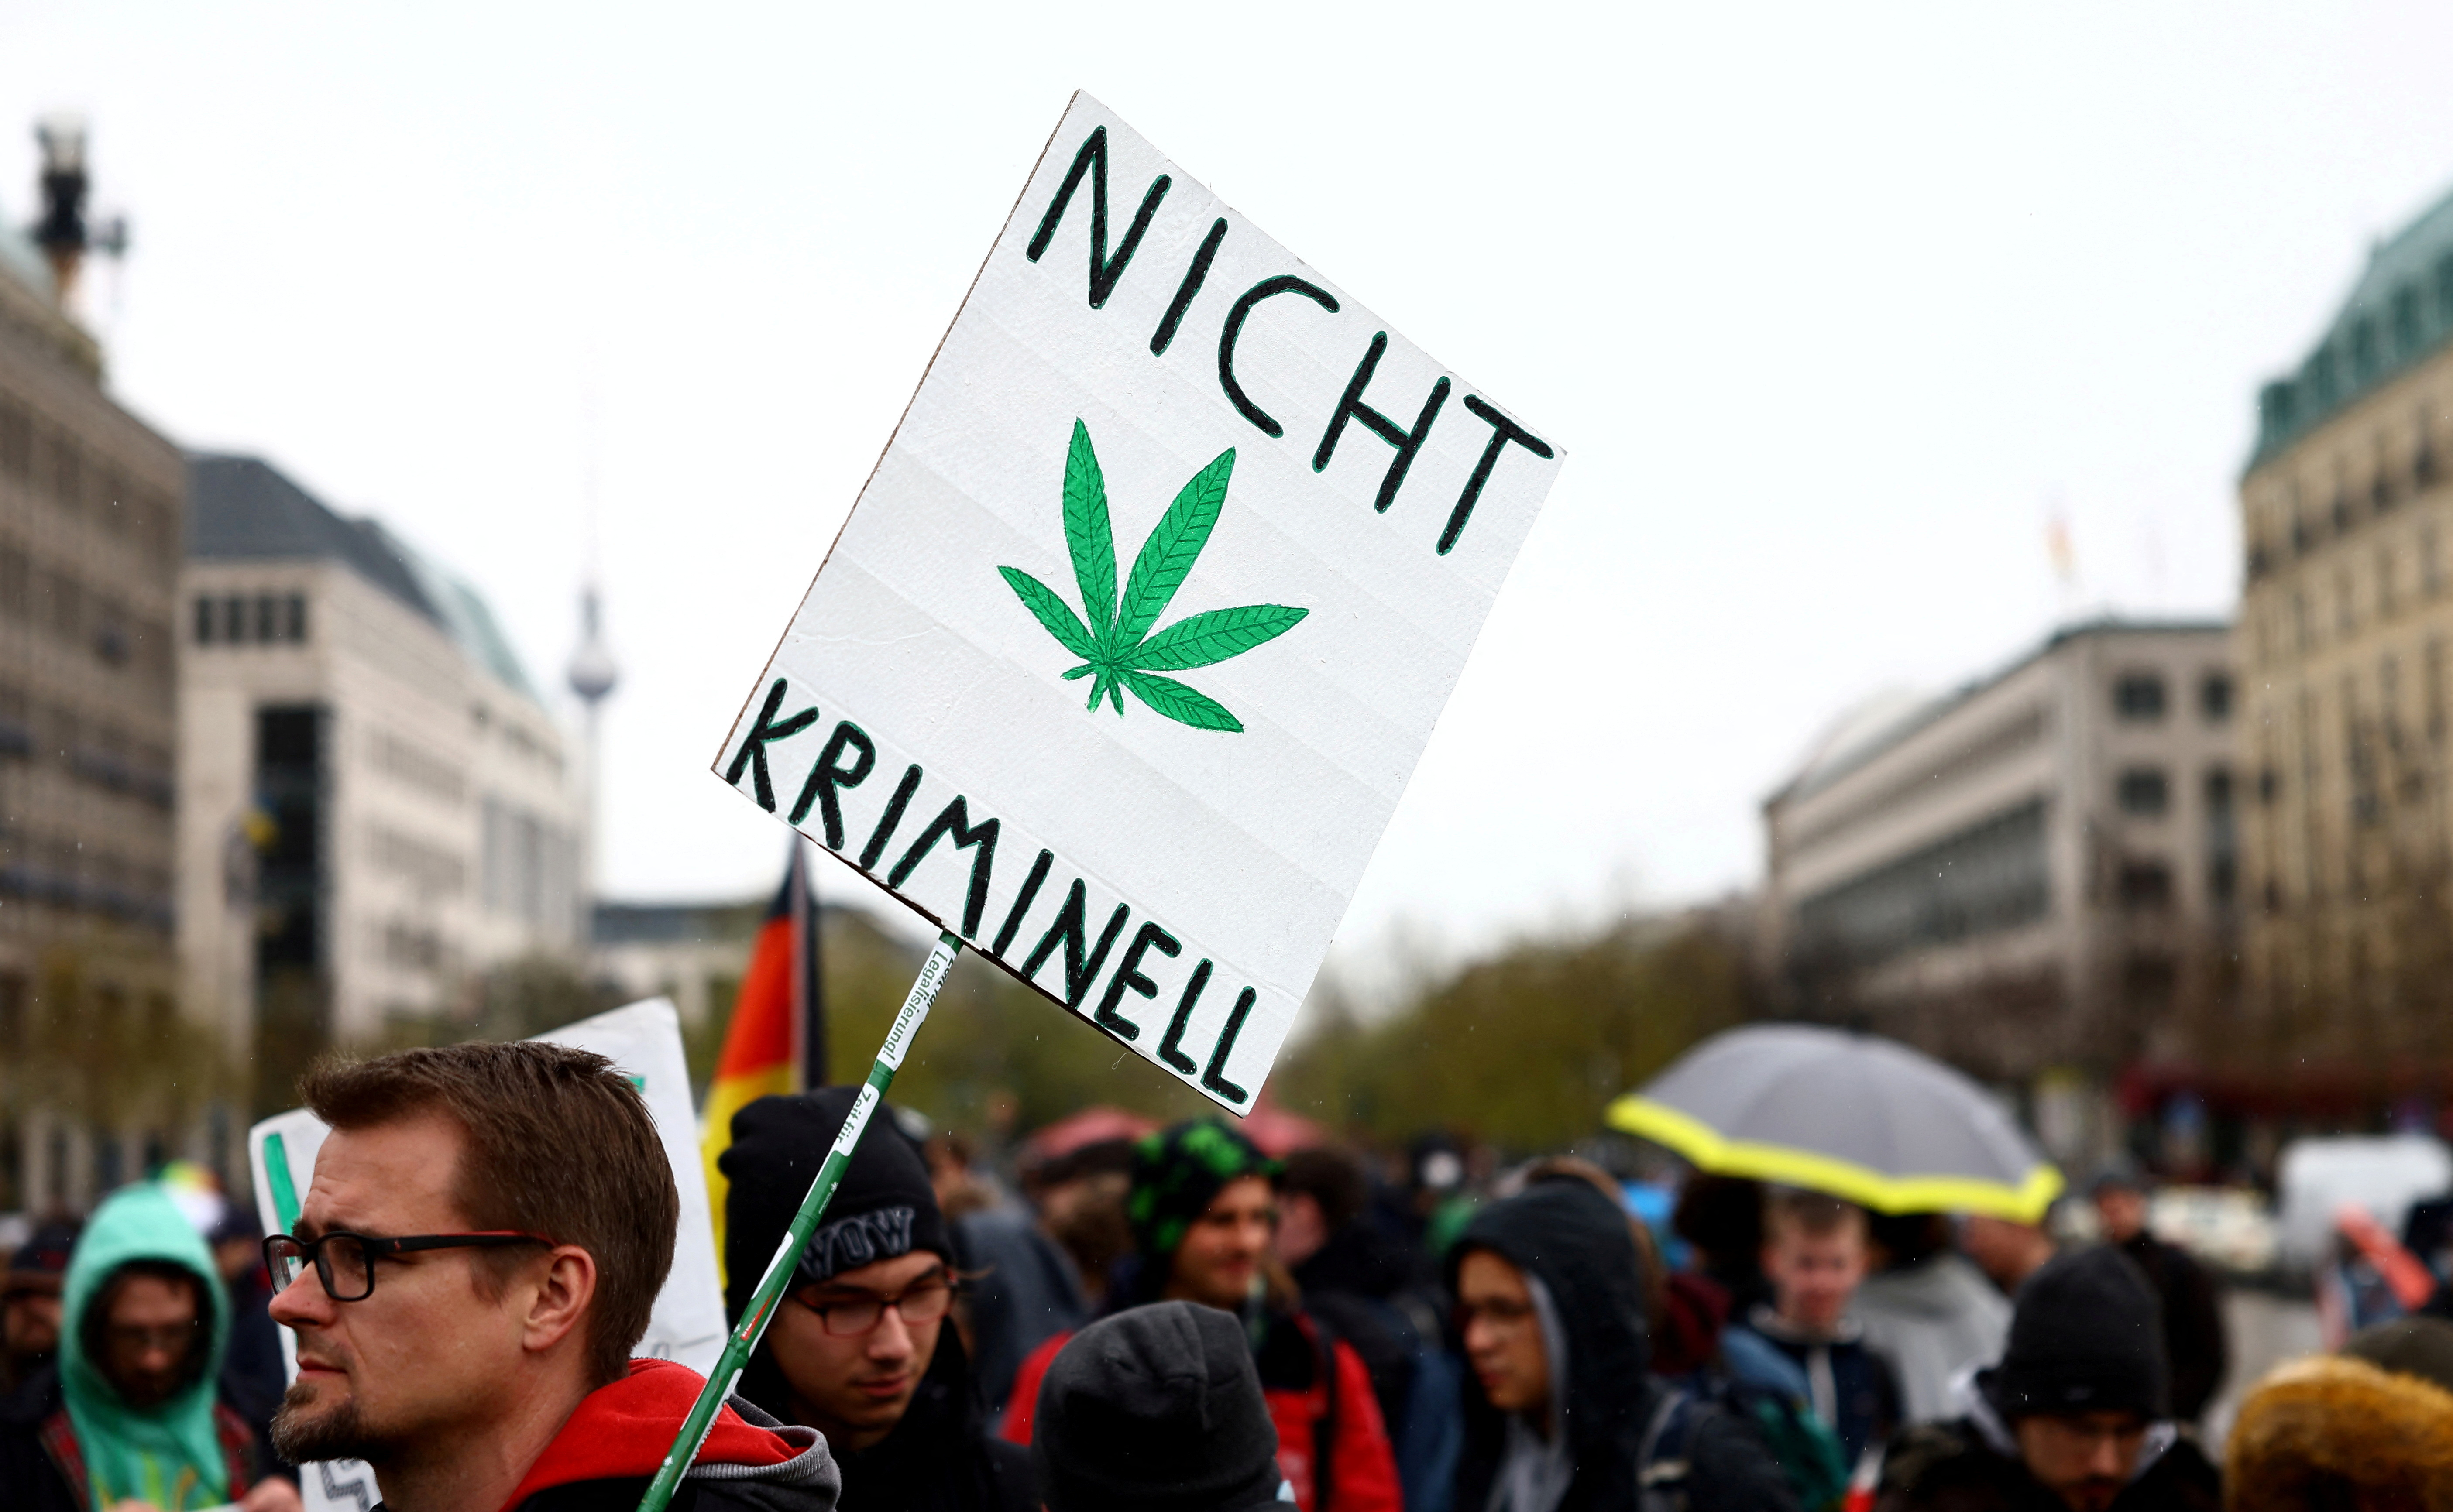 Un hombre lleva un cartel que dice "No criminal" mientras participa en una reunión con activistas de la marihuana para conmemorar el día mundial anual del cannabis y protestar por la legalización de la marihuana, frente a la Puerta de Brandenburgo, en Berlín, Alemania, el 20 de abril de 2022 (REUTERS/Lisi Niesner)